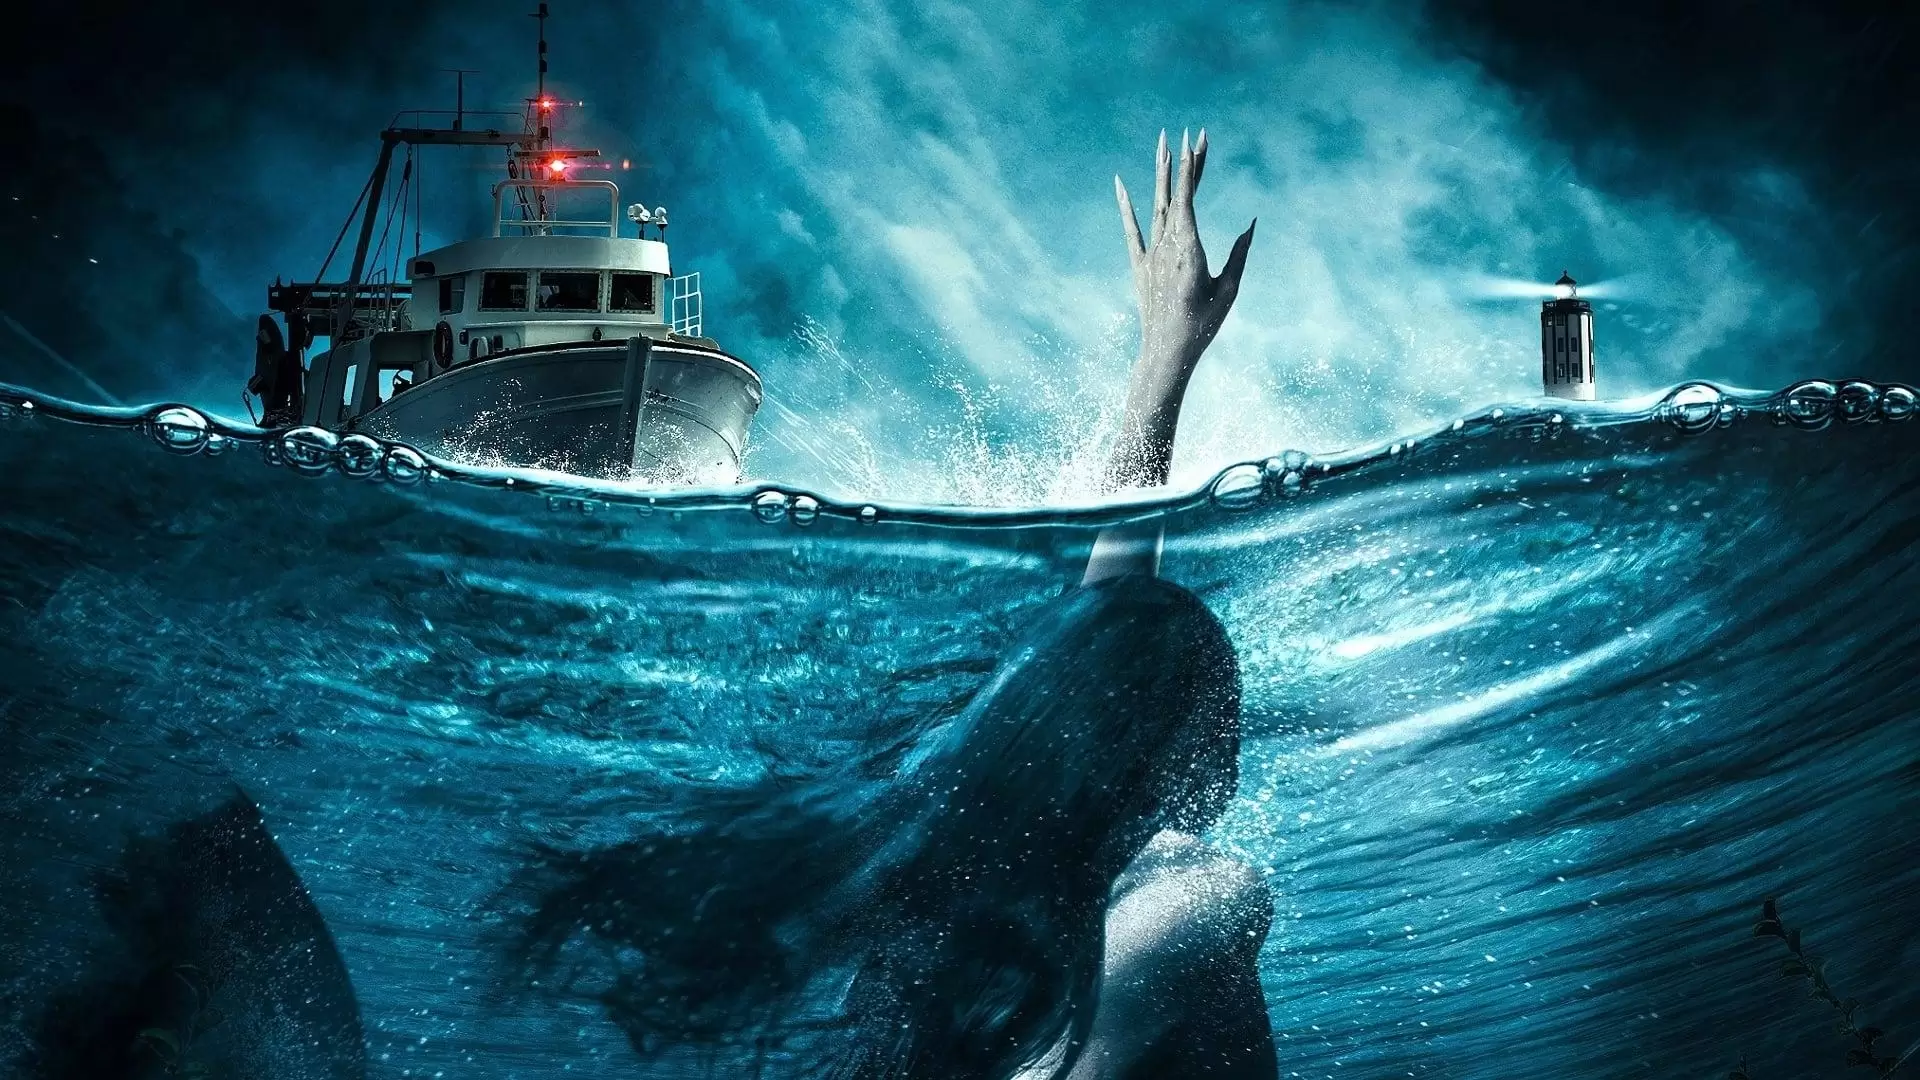 دانلود فیلم Mermaid Down 2019 (سقوط پری دریایی) با زیرنویس فارسی و تماشای آنلاین